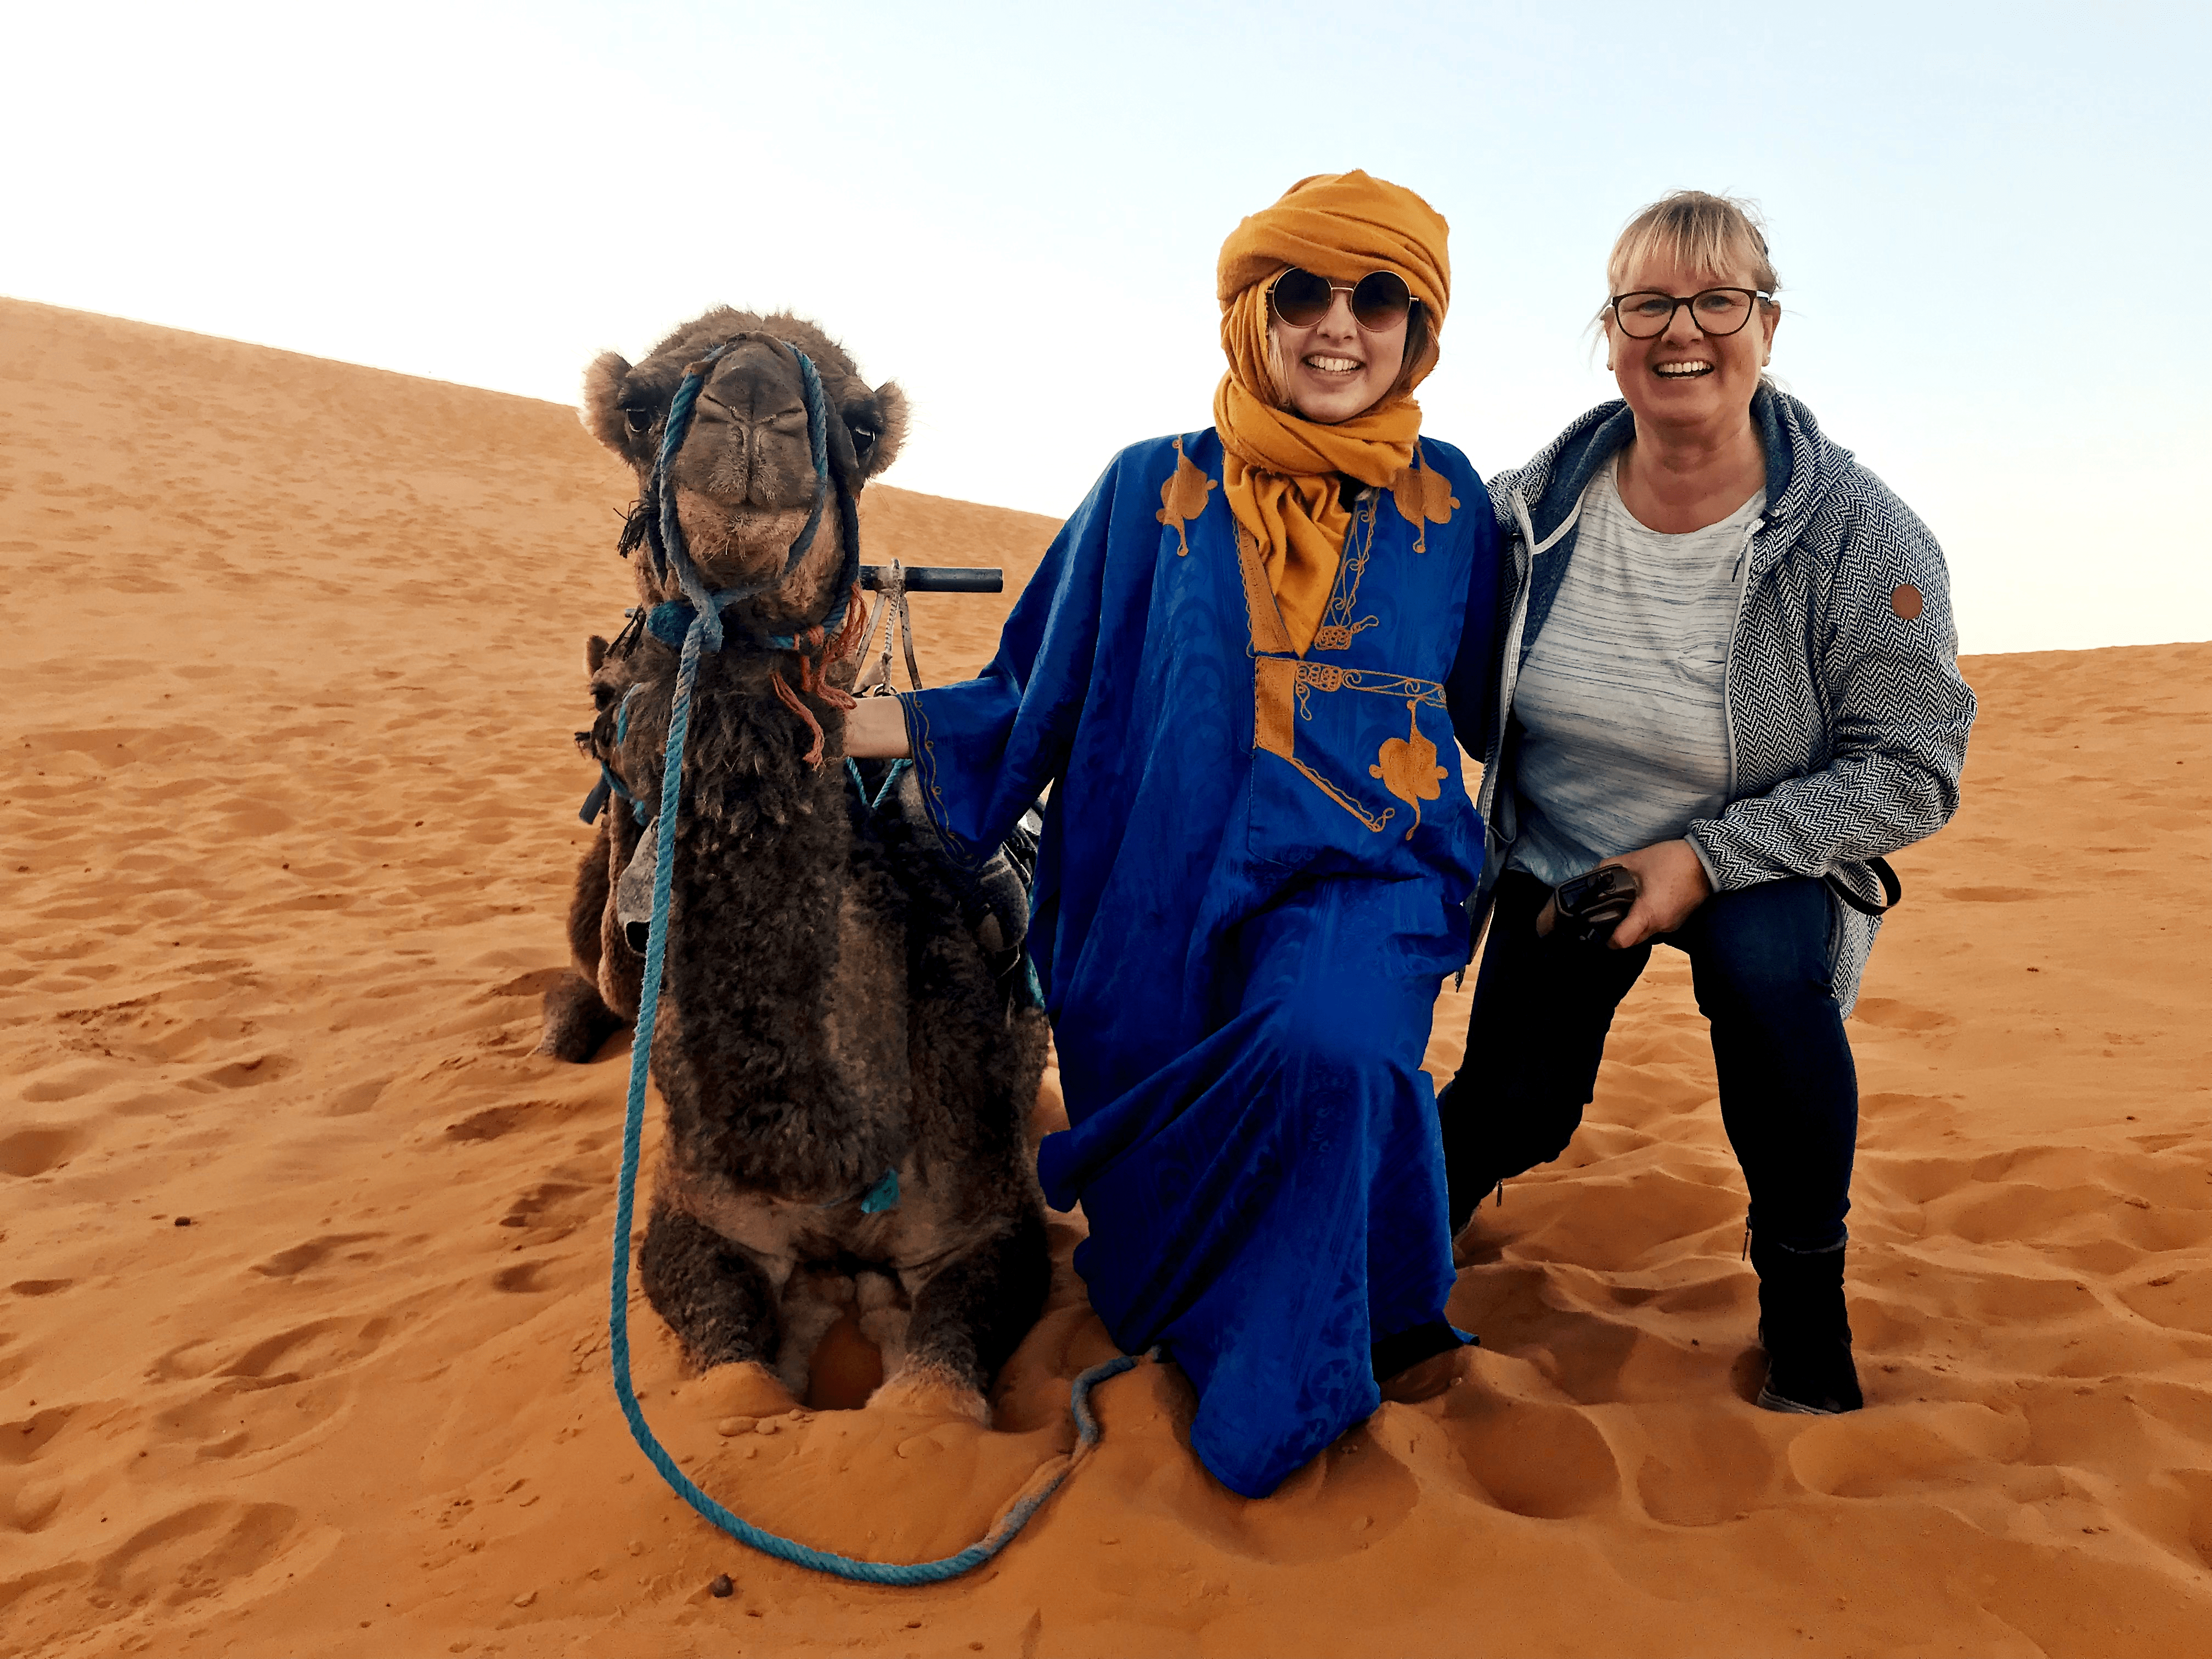 Erfoud & kameel rijden in Sahara Merzouga / Marokko